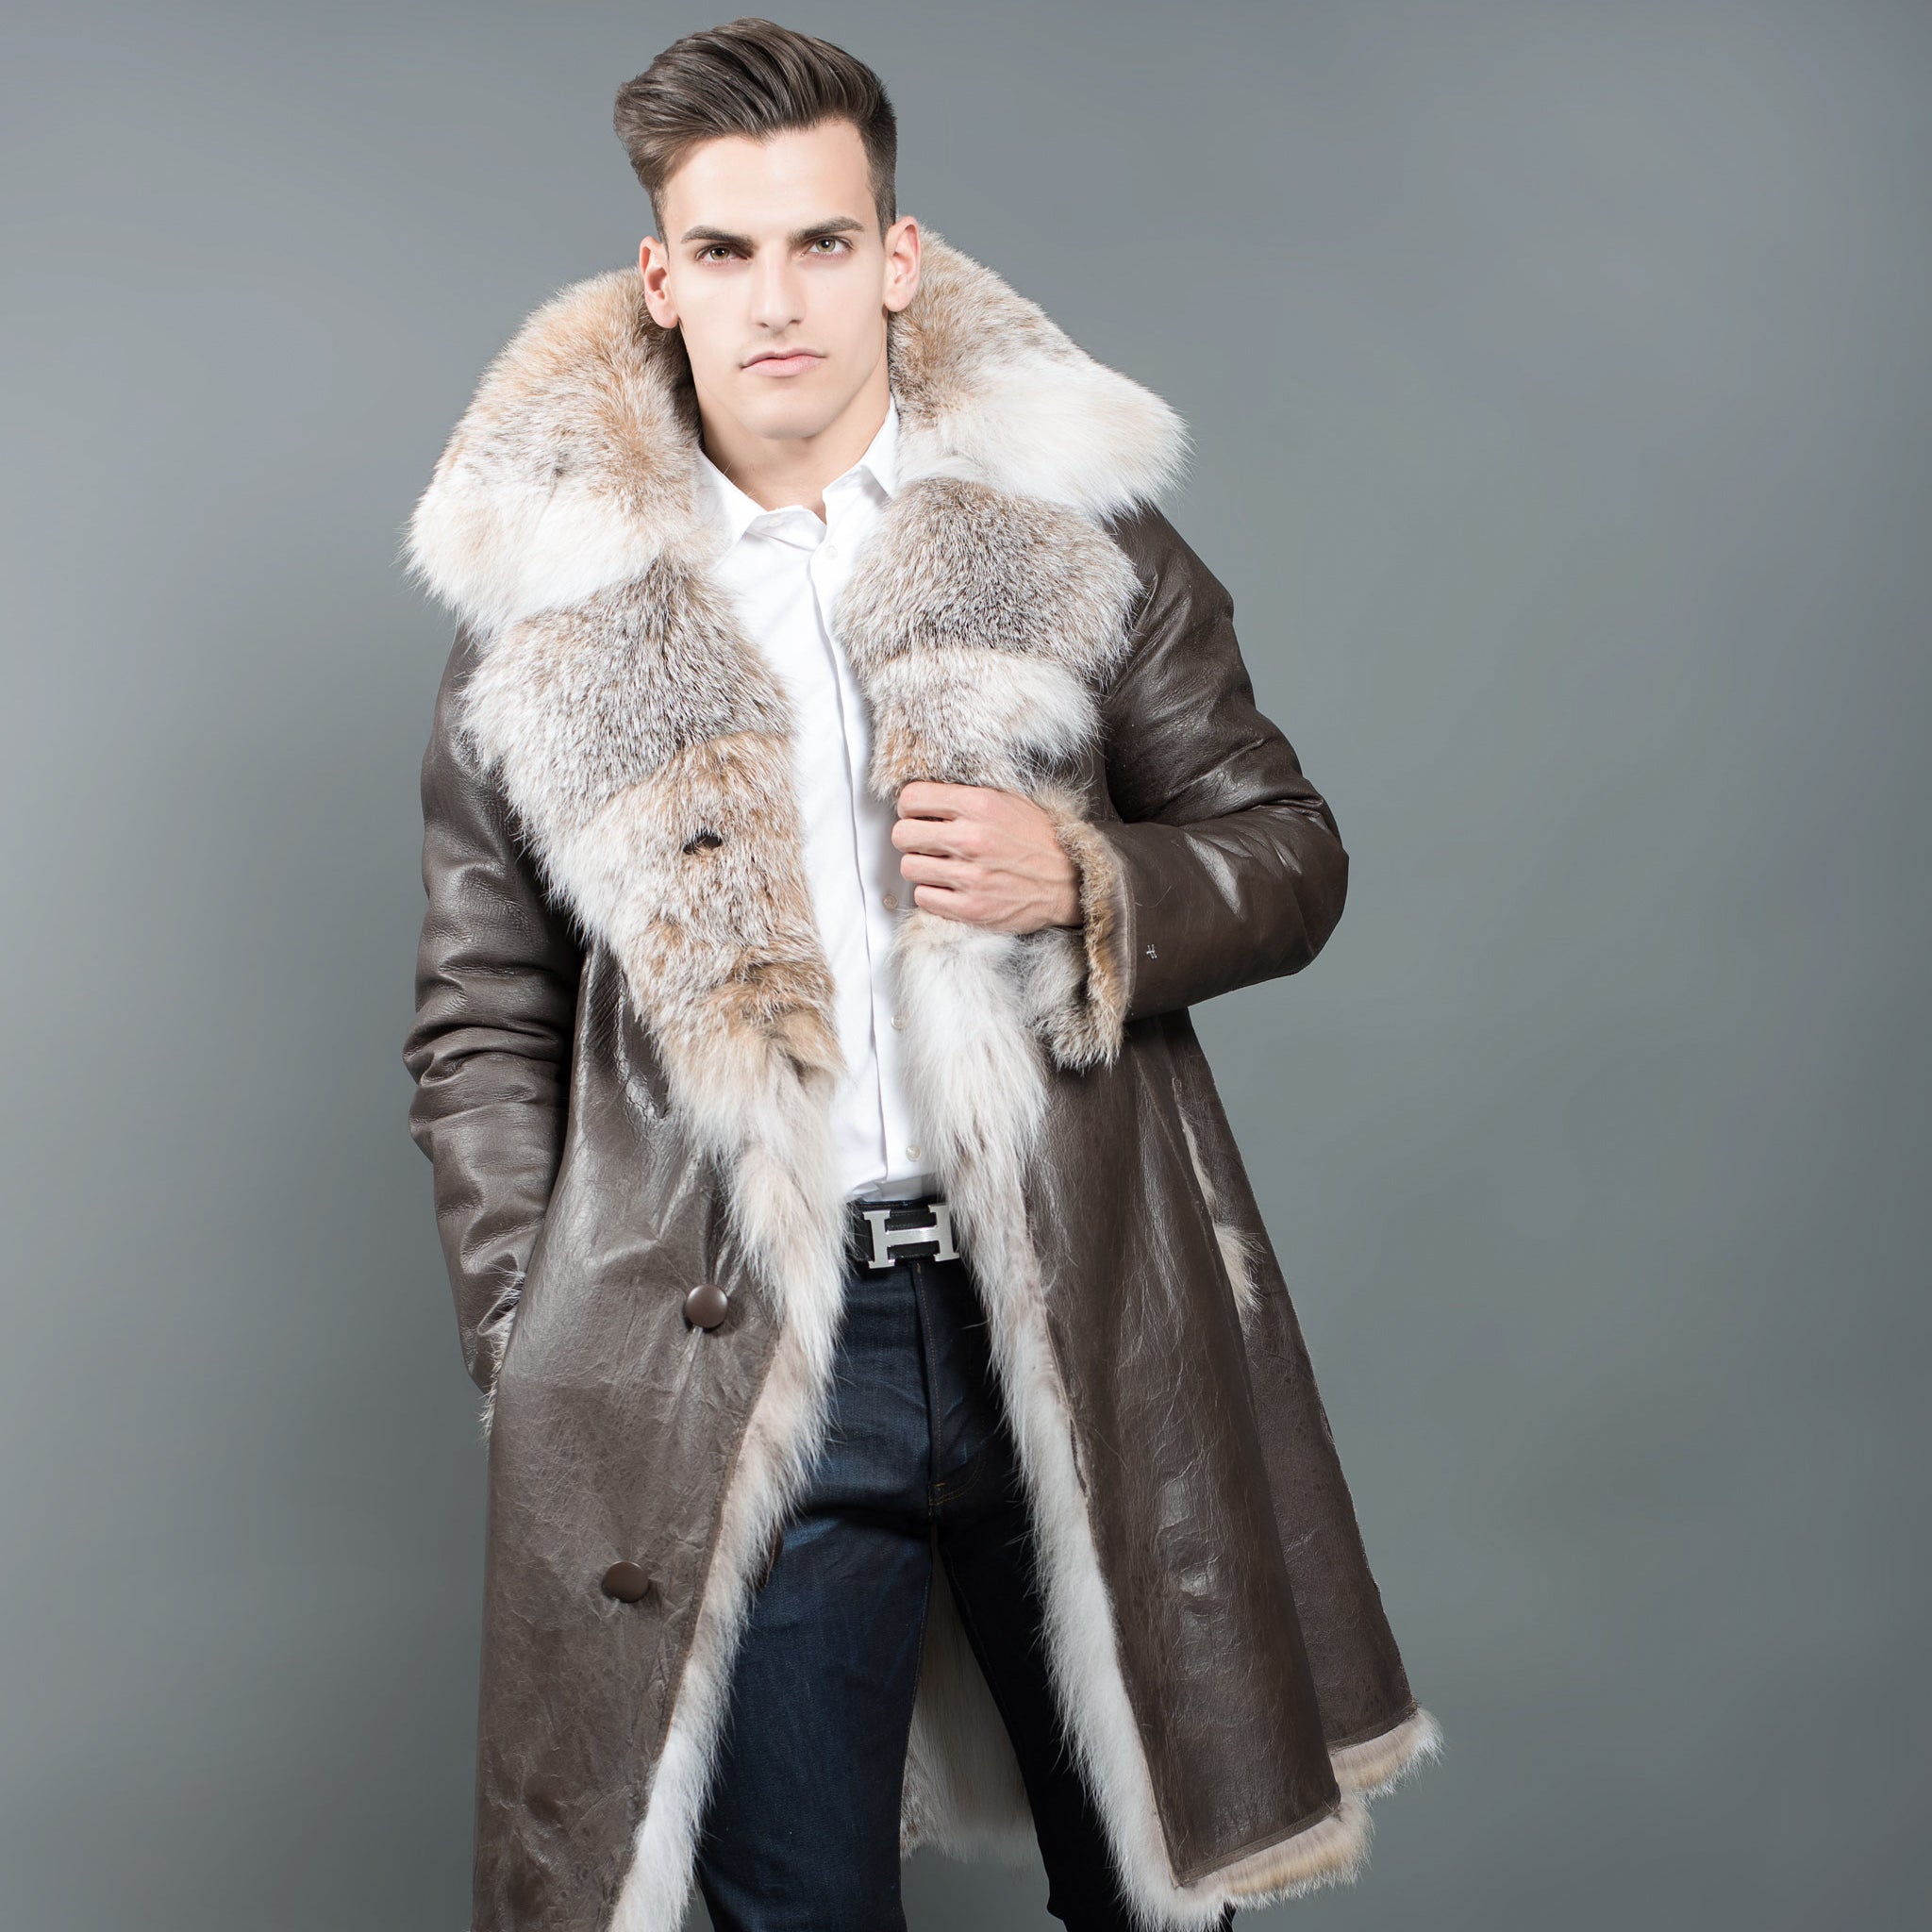 Fur Caravan Men's Denim Jacket with Fur 48